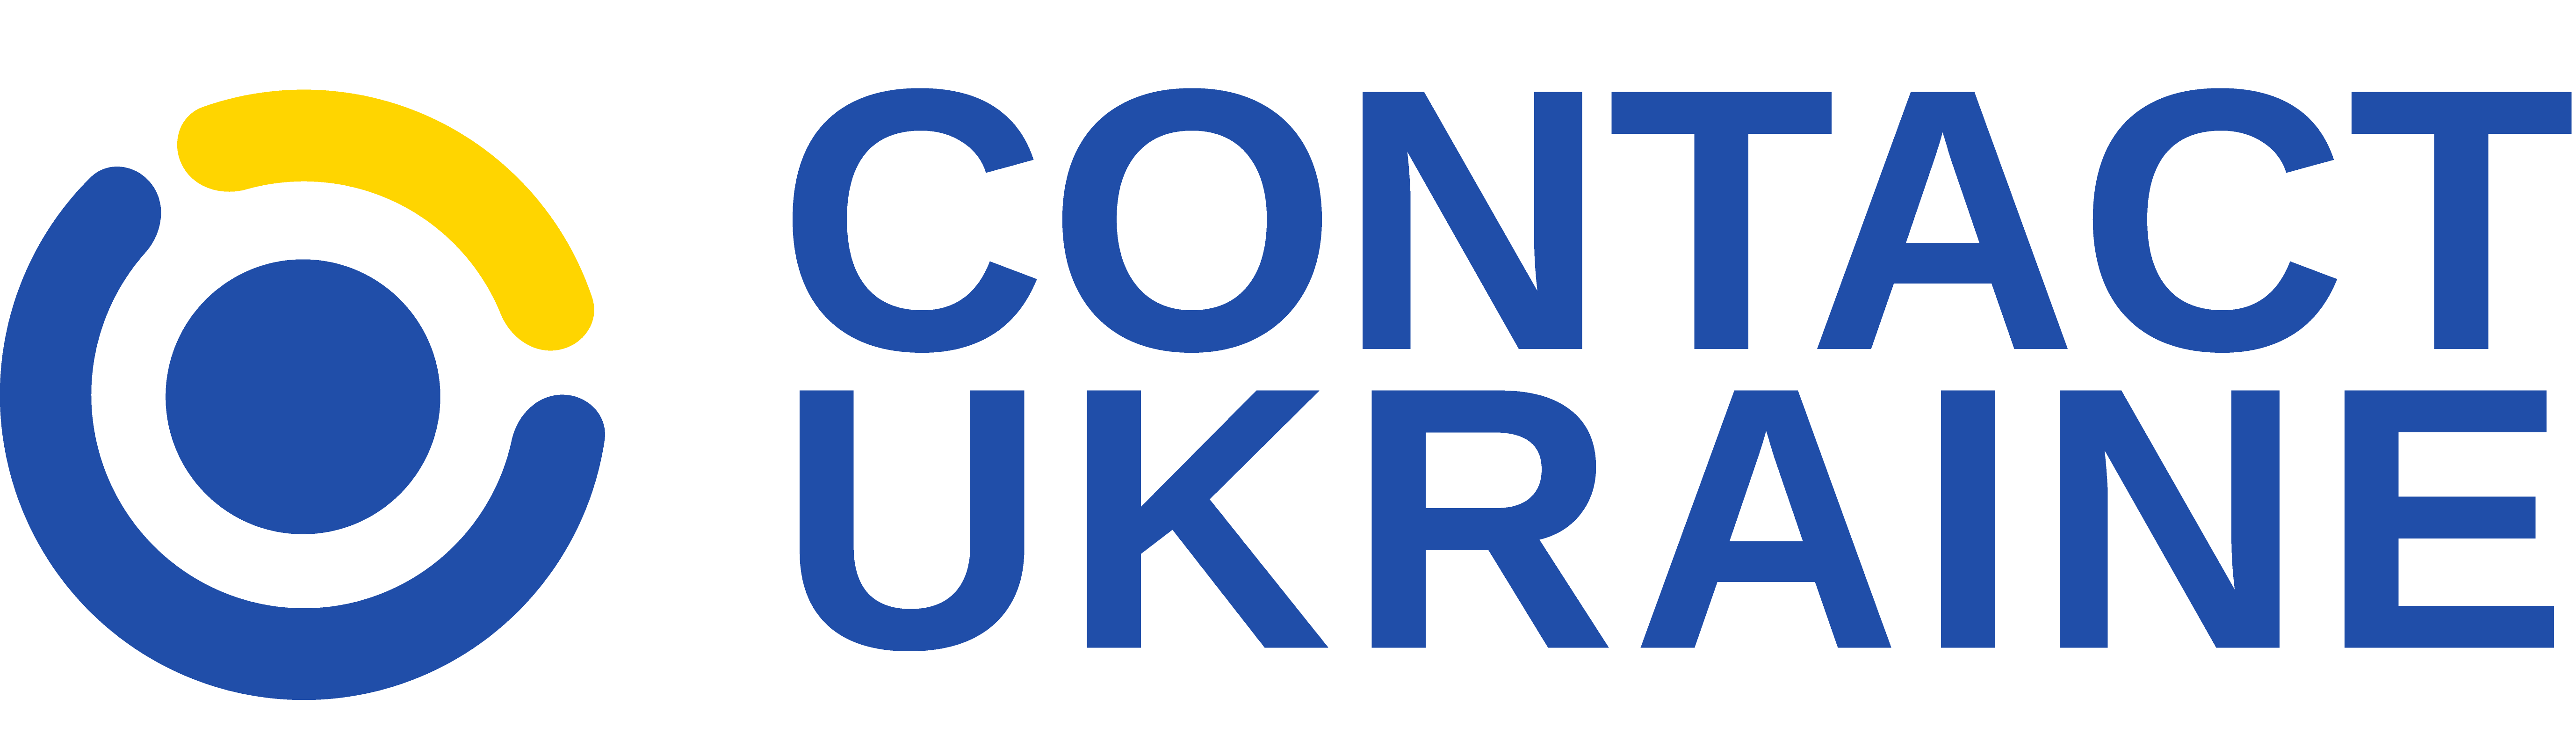 Contact Ukraine logo 01